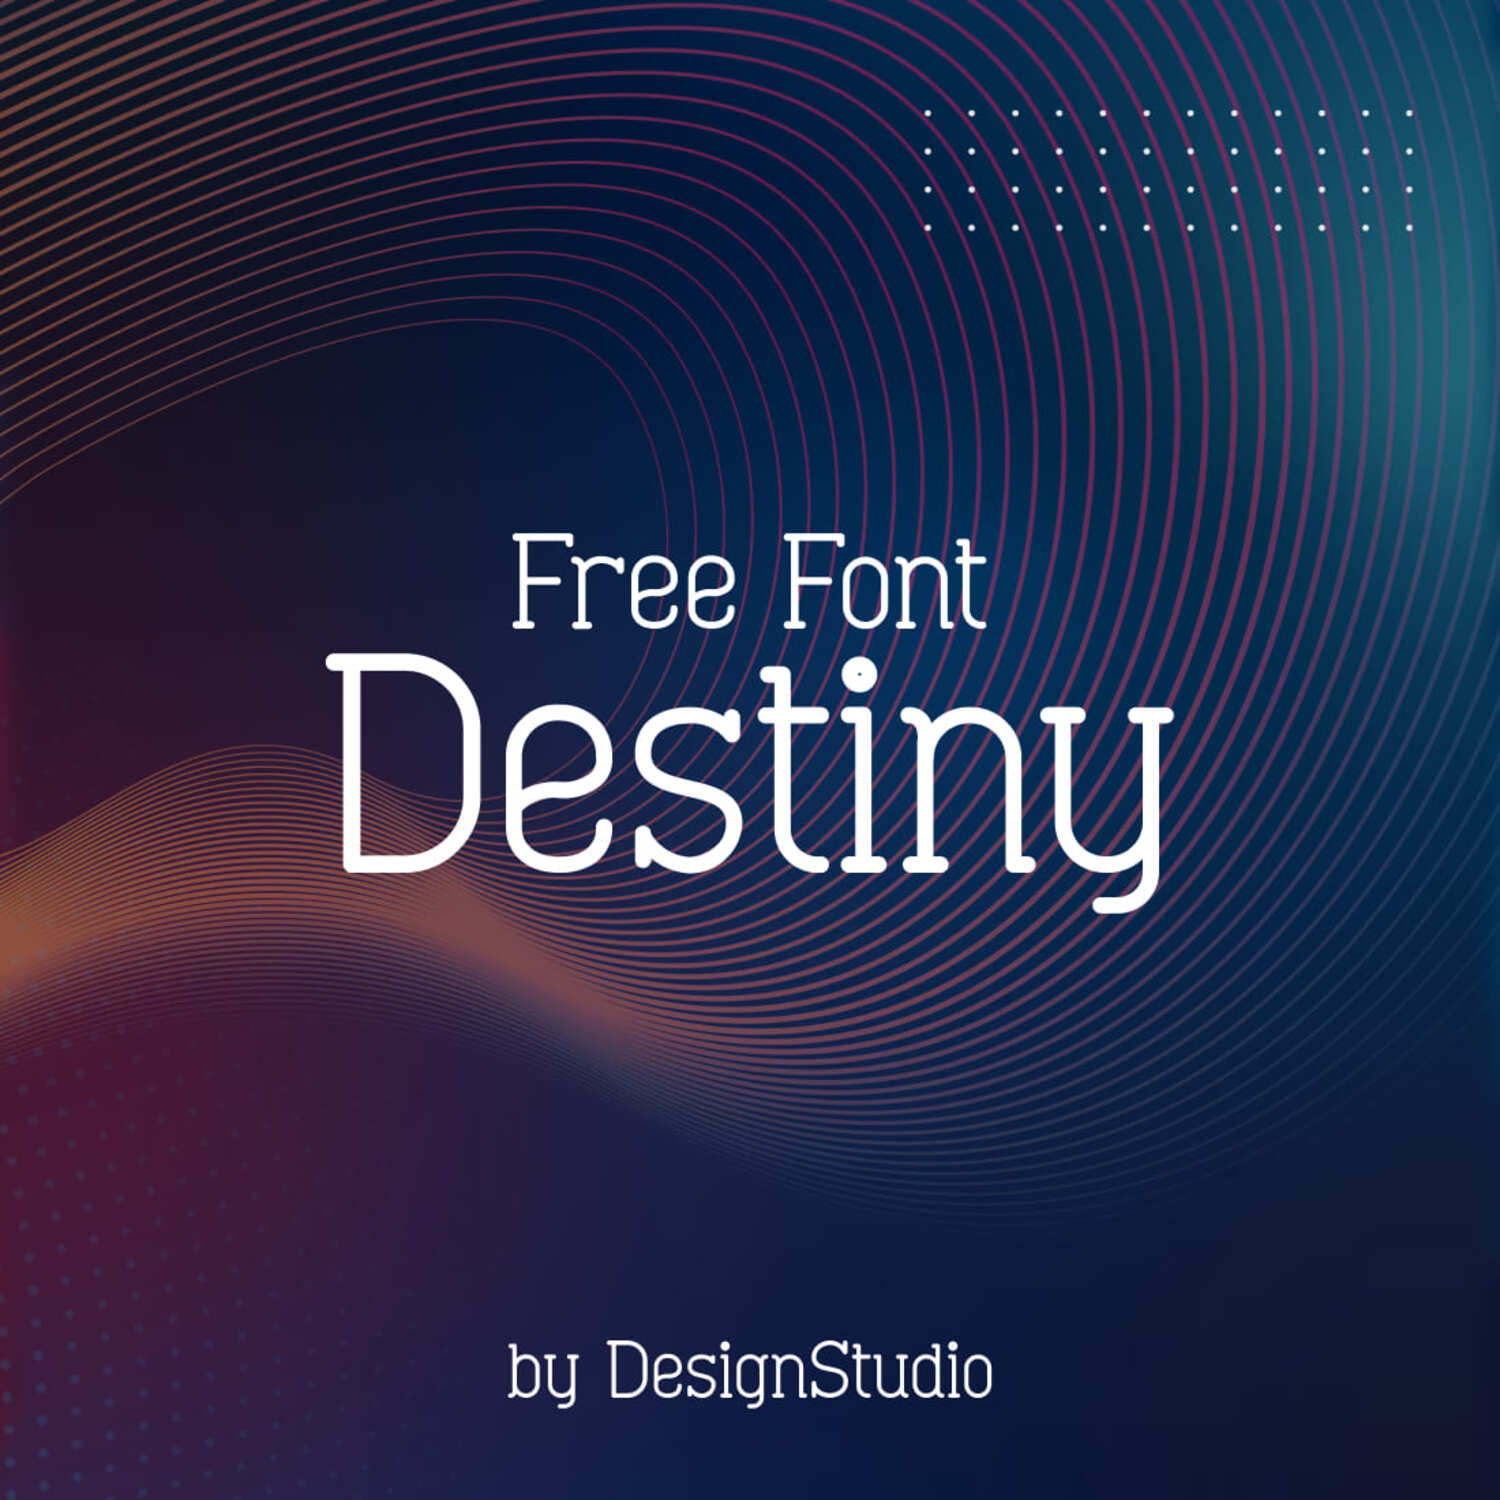 Destiny Monospaced Serif Font main cover.